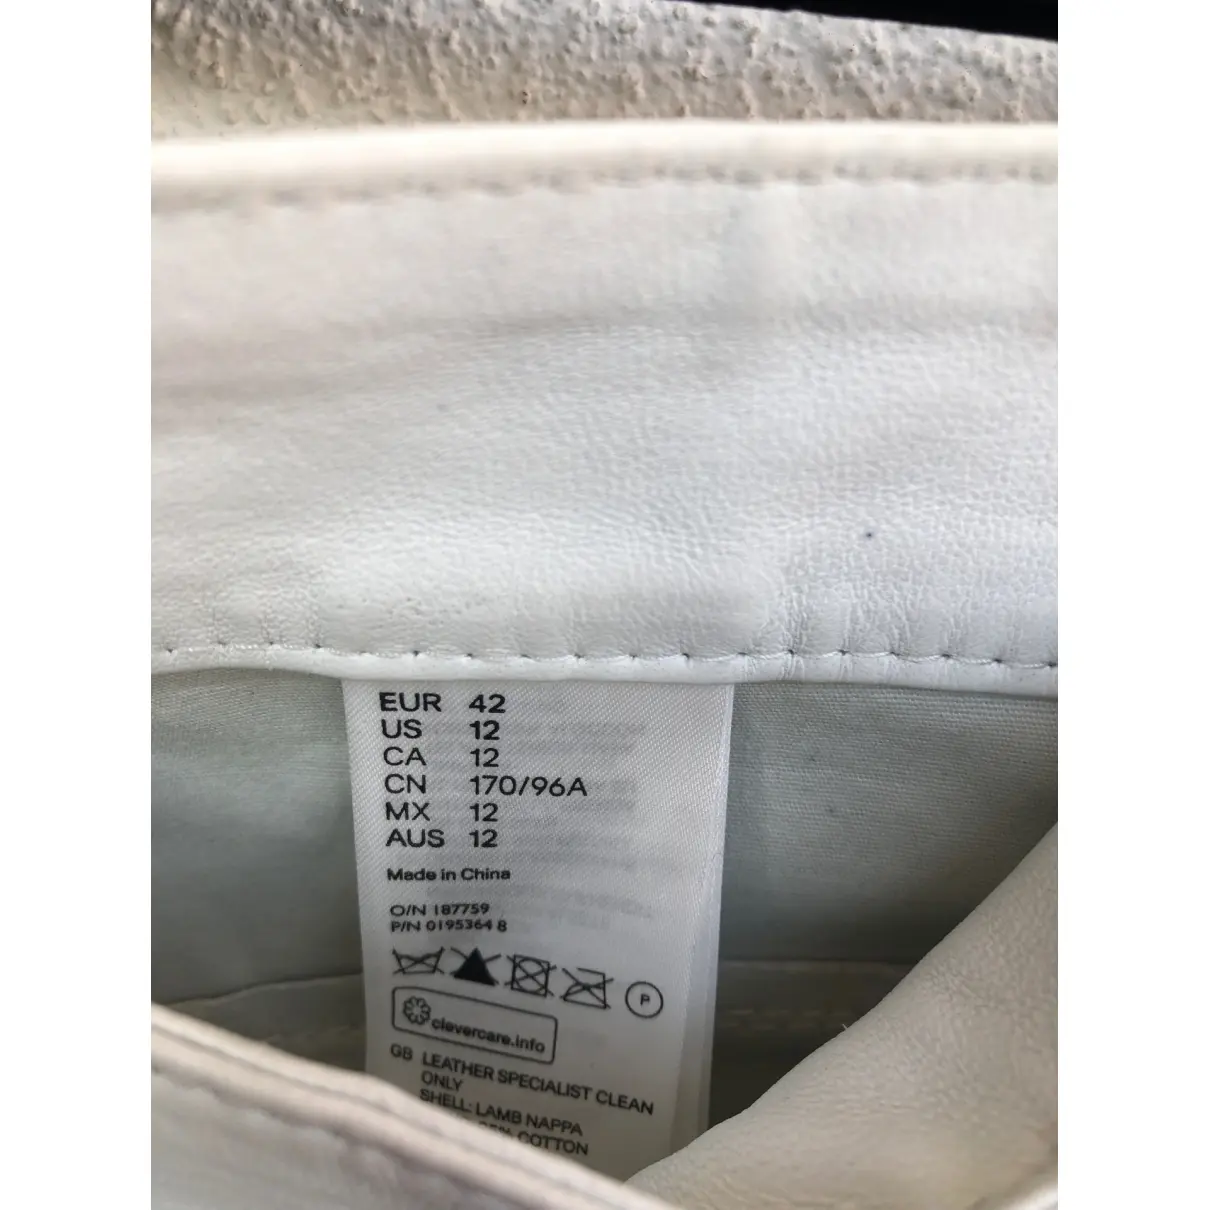 Leather slim pants Isabel Marant Pour H&M